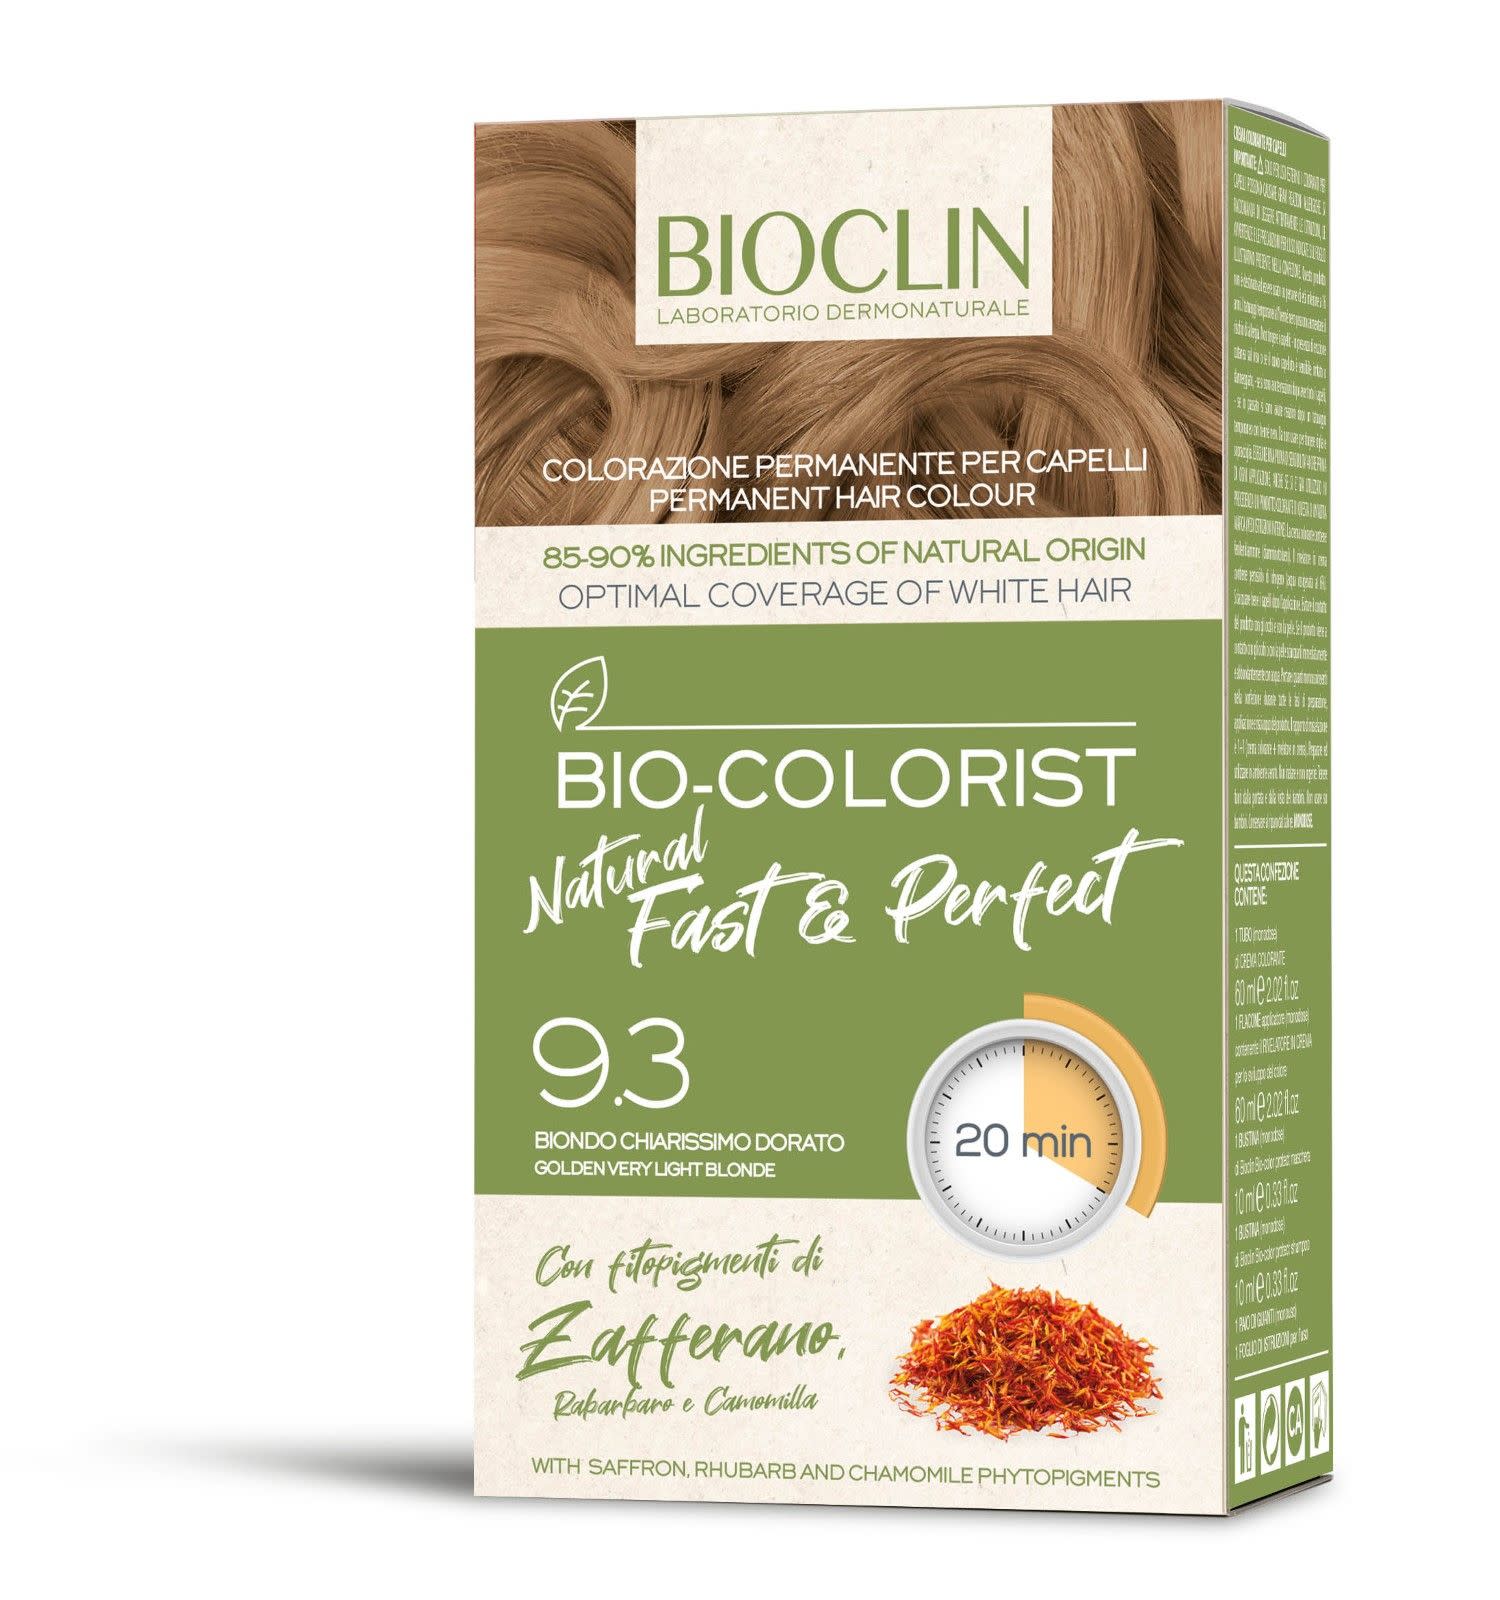 981516192 - Bioclin Bio Colorist Fast and Perfect Tinta Capelli colore Biondo chiarissimo dorato - 4707852_1.jpg